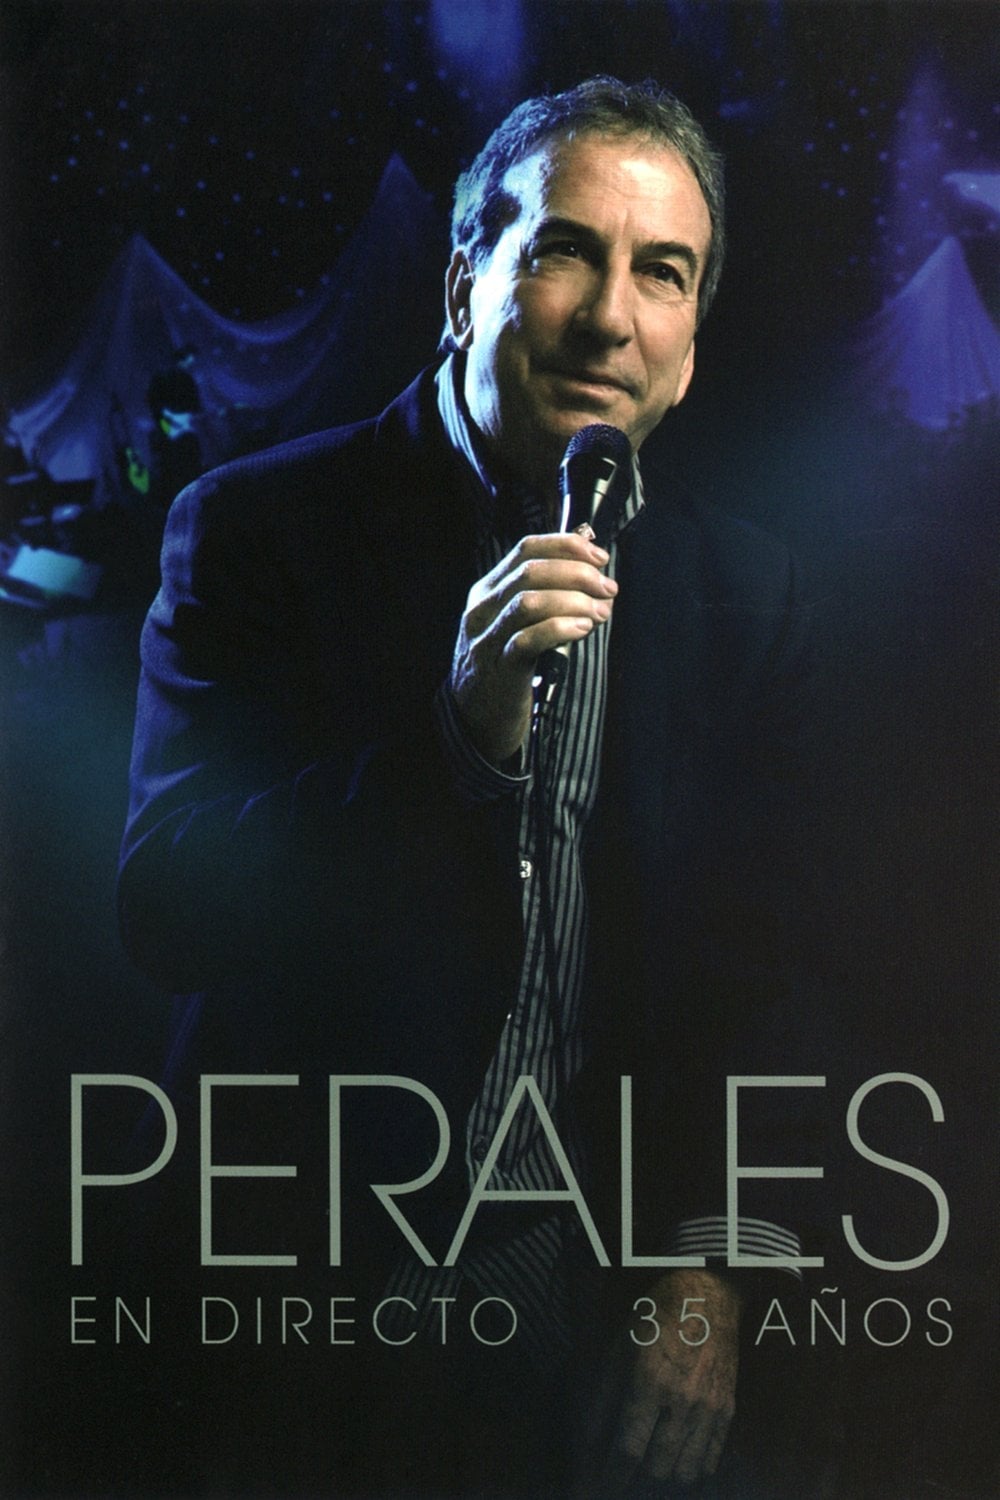 Jose Luis Perales: En Directo: 35 Años